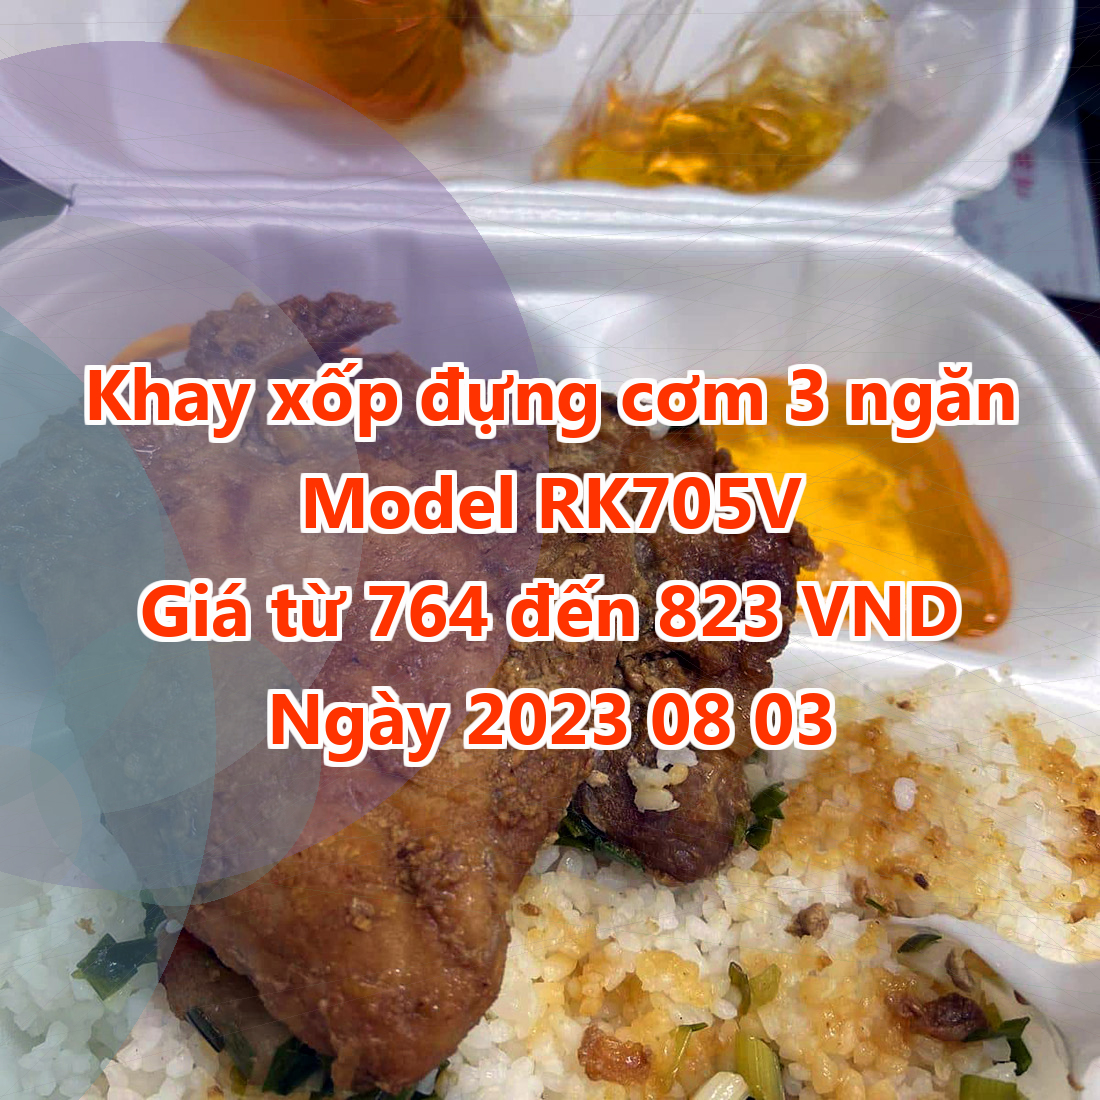 Khay xốp đựng cơm 3 ngăn - Model RK705V - Giá 764 VND